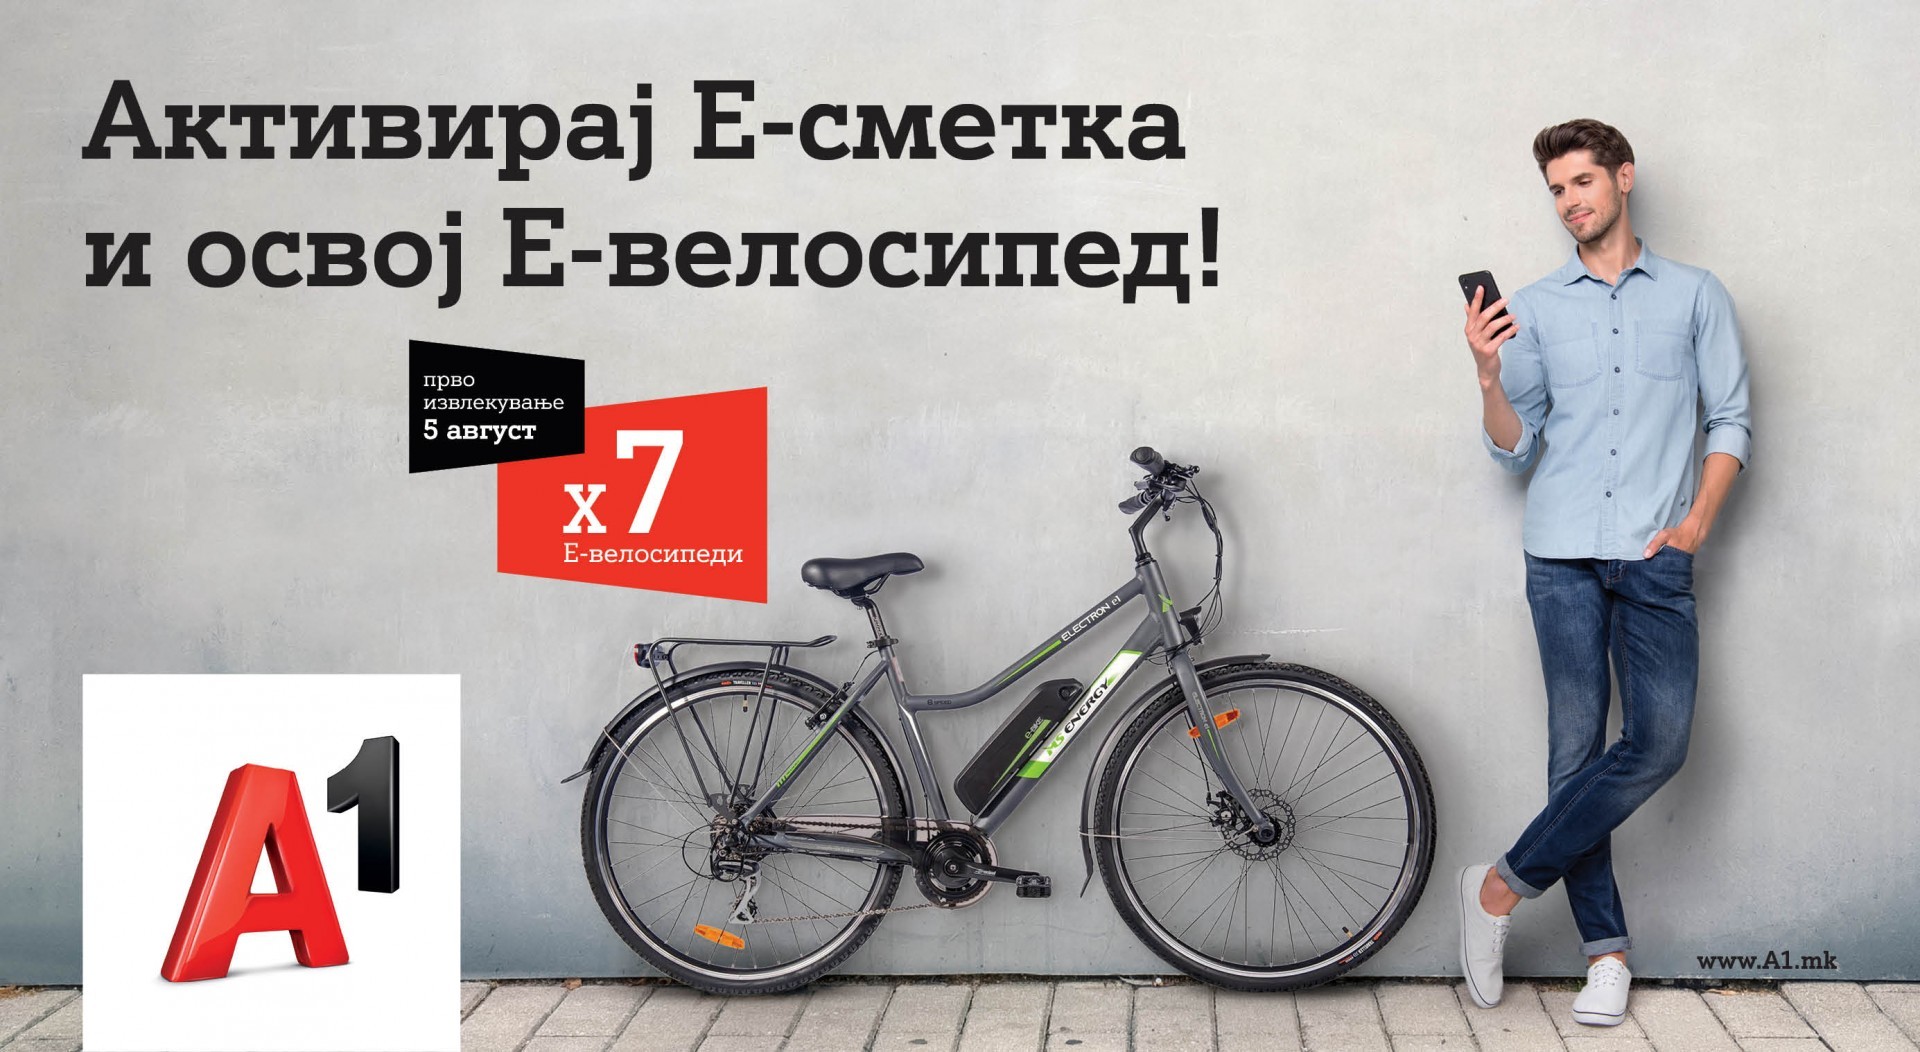 А1 Македонија подарува: Со нова активација на Е-сметка до електричен велосипед